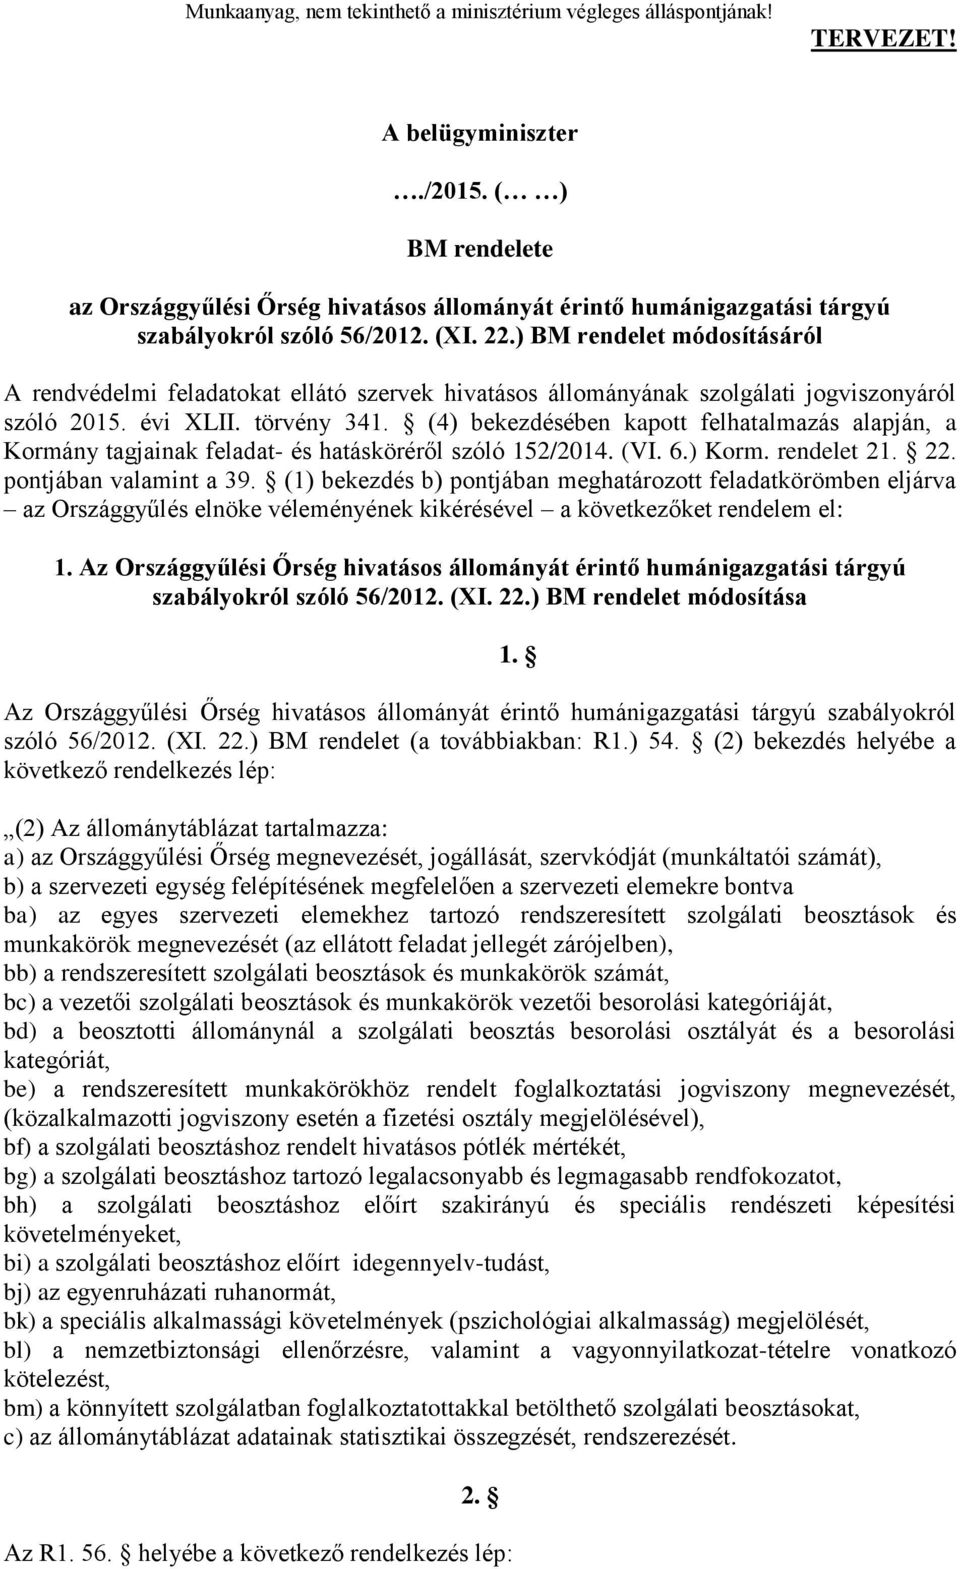 (4) bekezdésében kapott felhatalmazás alapján, a Kormány tagjainak feladat- és hatásköréről szóló 152/2014. (VI. 6.) Korm. rendelet 21. 22. pontjában valamint a 39.